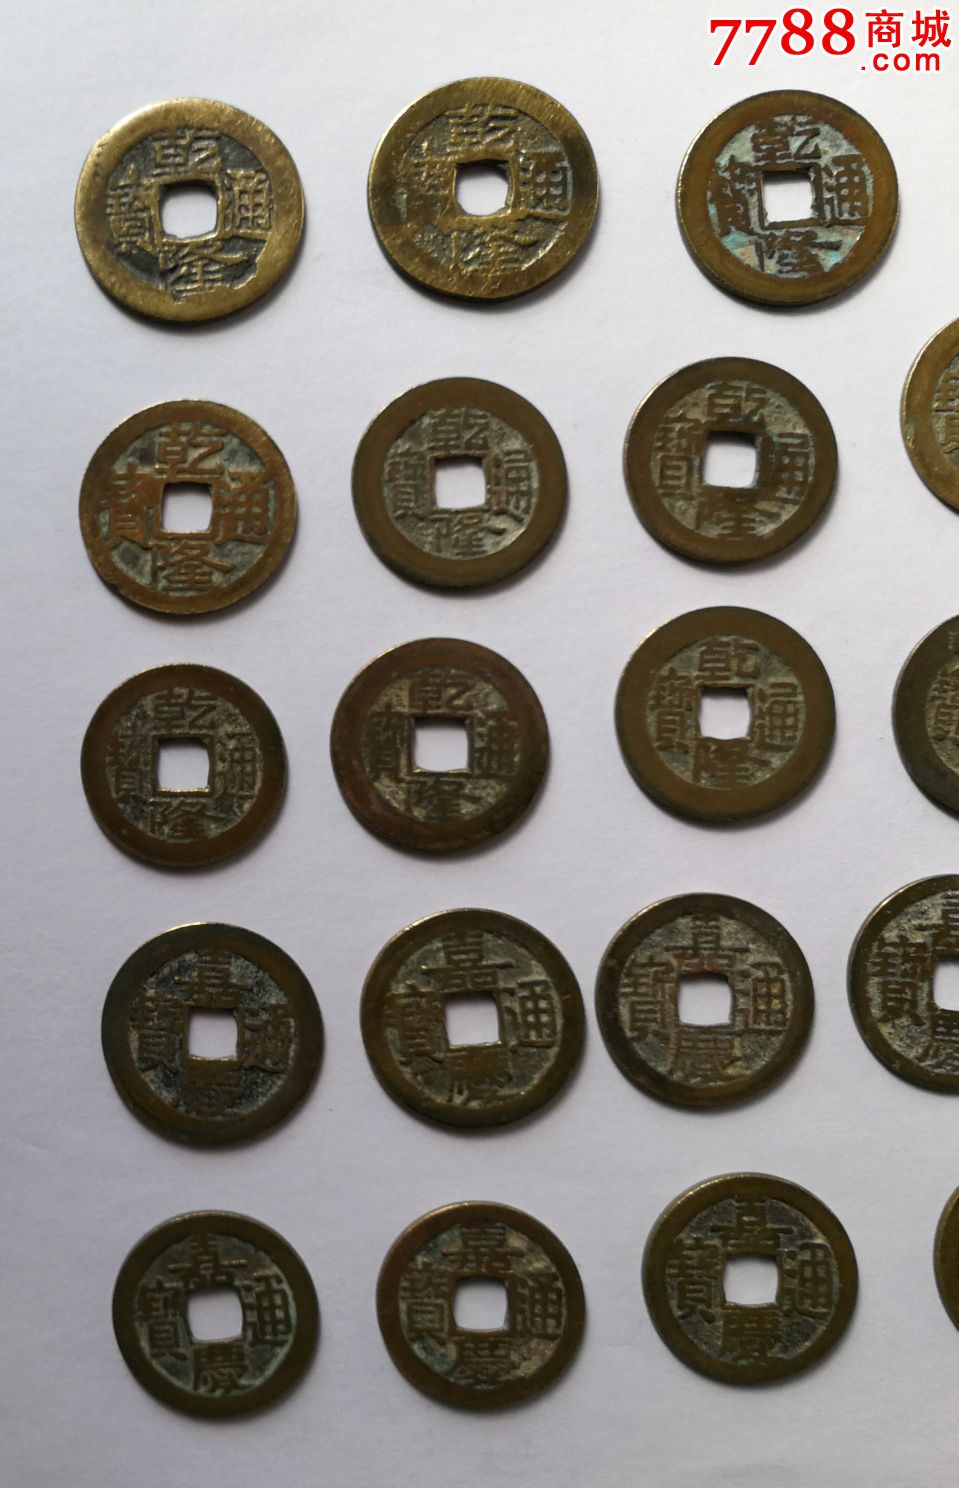 古董铜币图片及价格图片